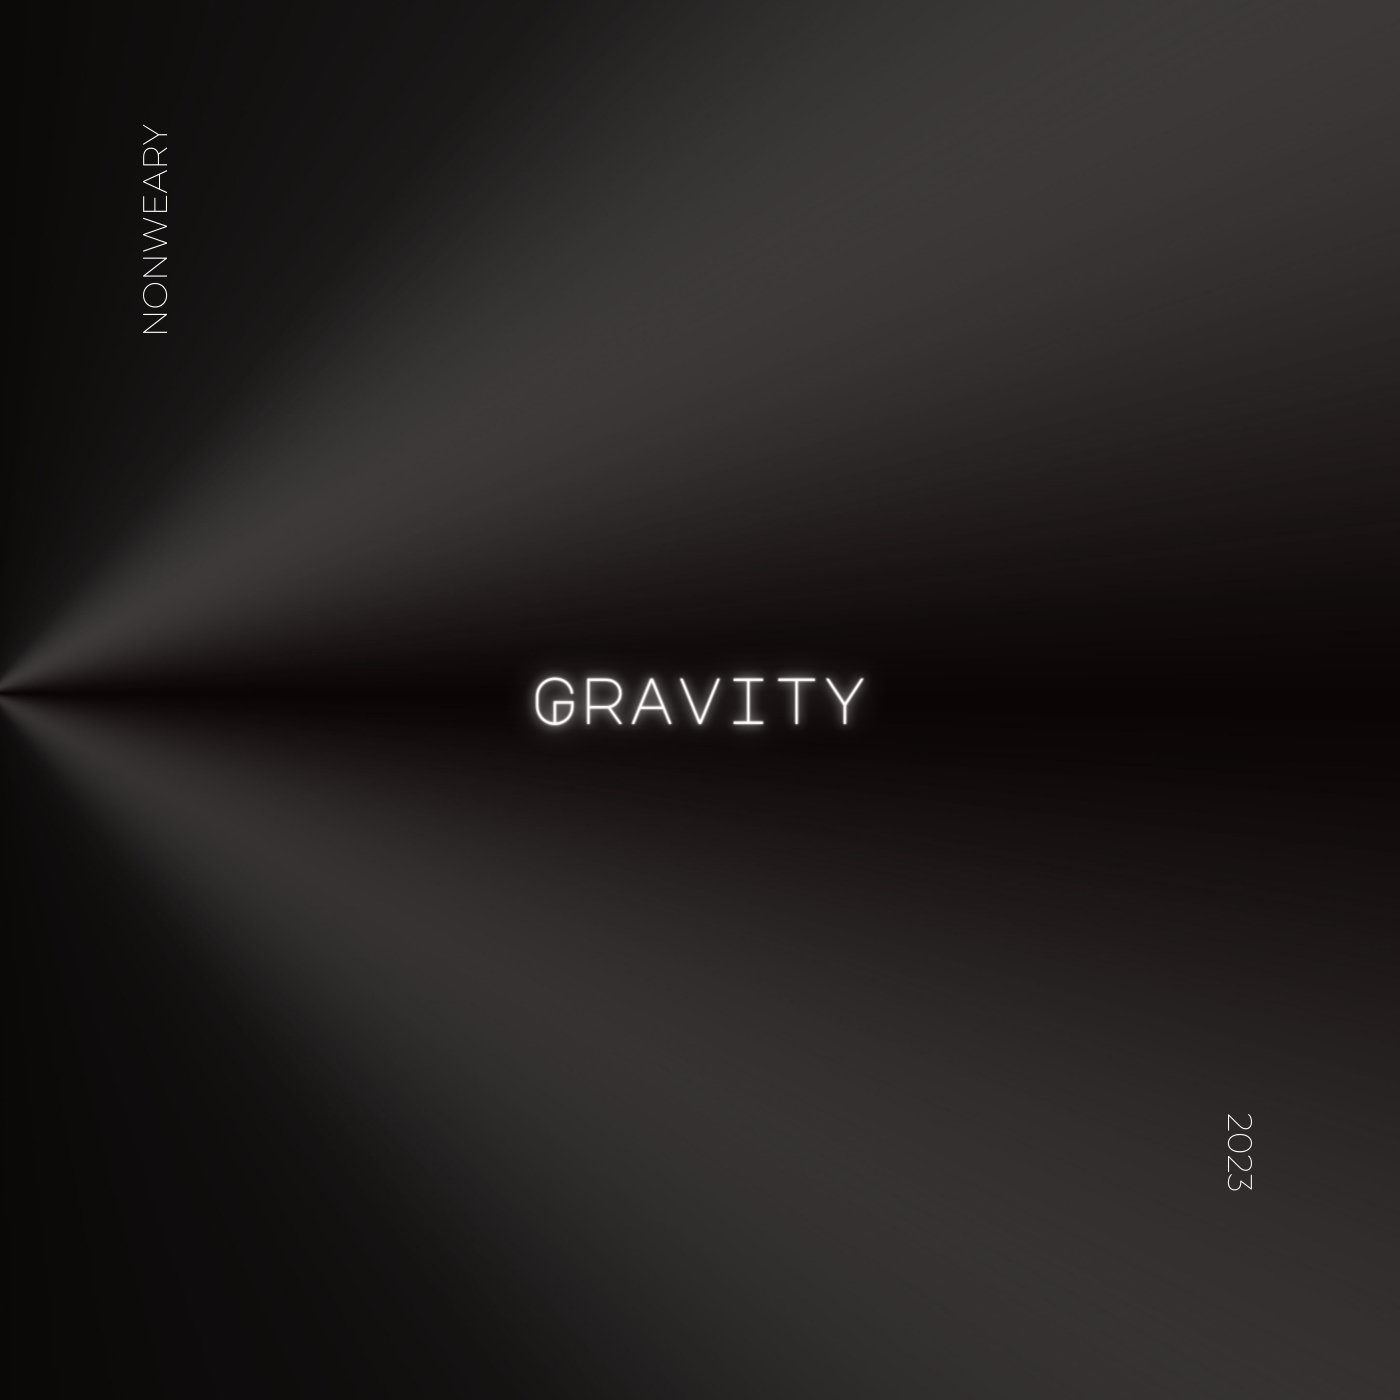 Gravity - NonWeary - Scraps Audio